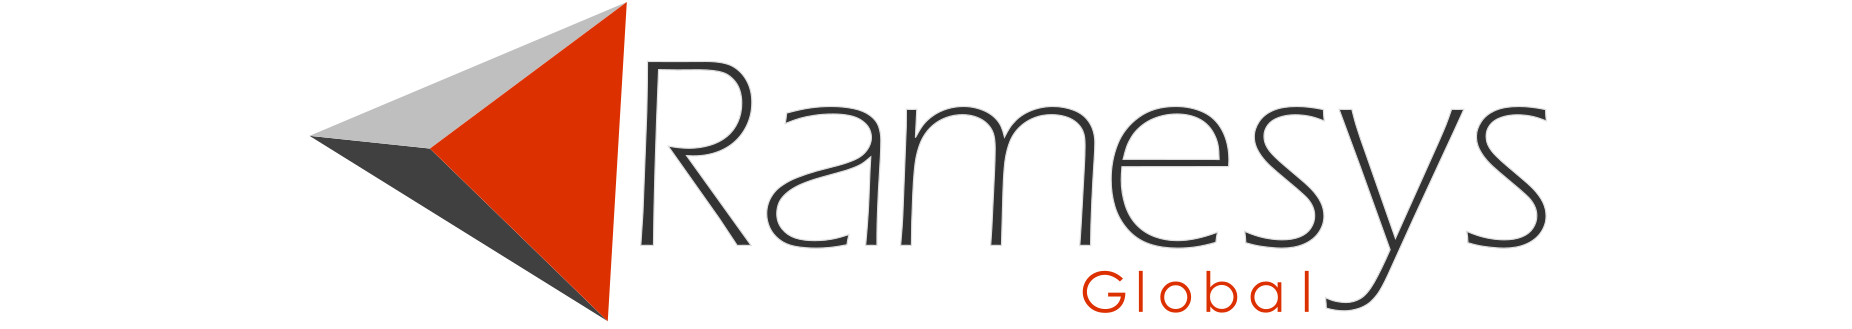 Ramesys-Logo-2019-White-Large-Hubspot